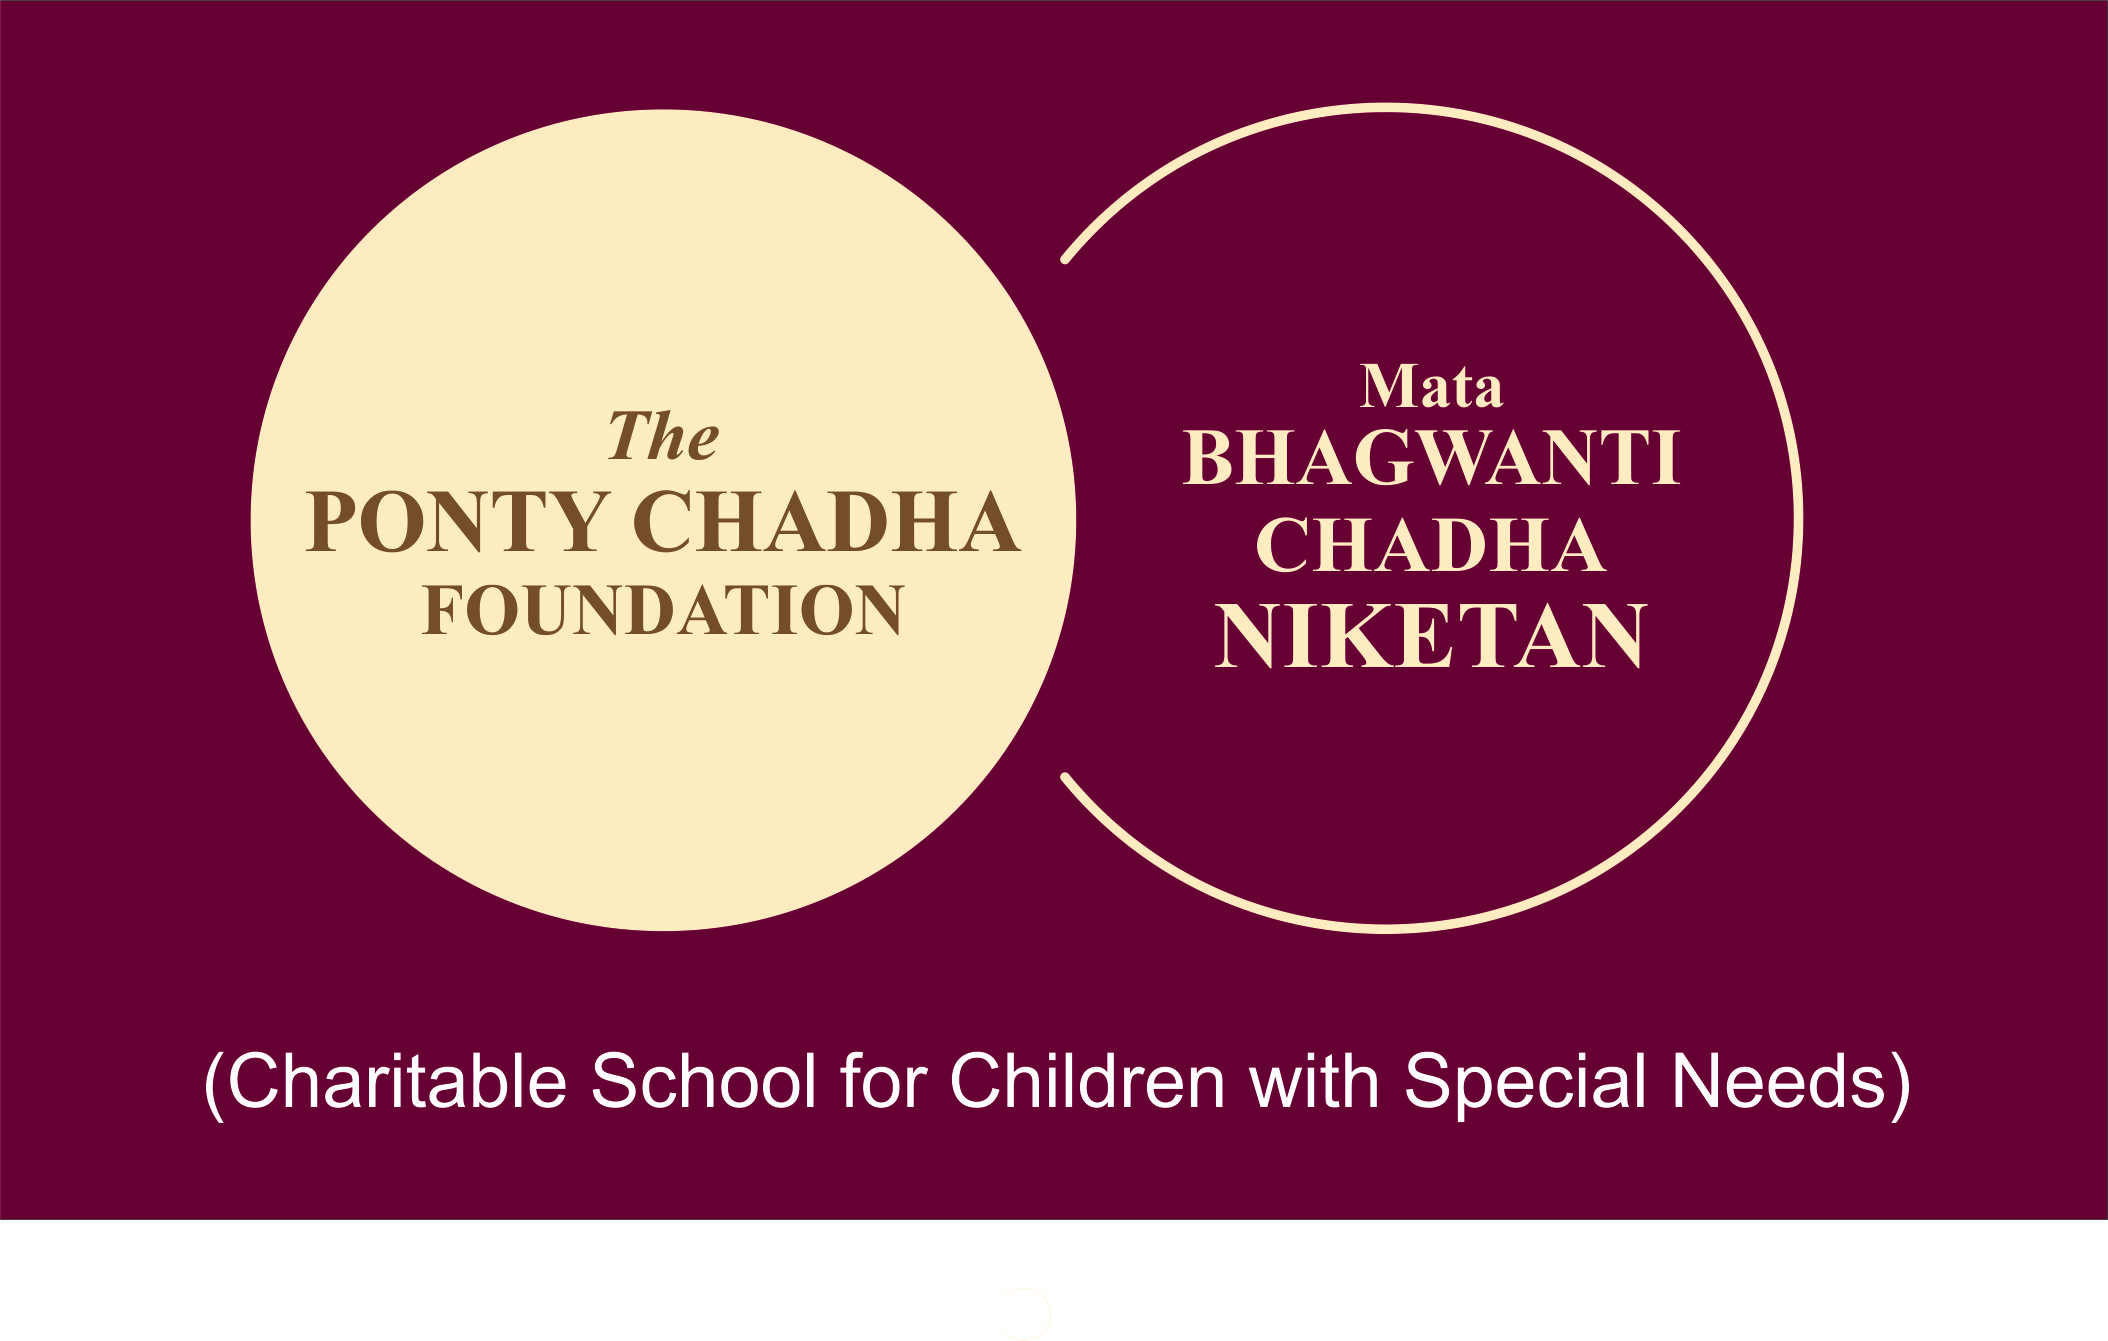 Mata Bhagwanti Chadha Niketan collaborates with UNICEF and CCDRR Centre, NIDM